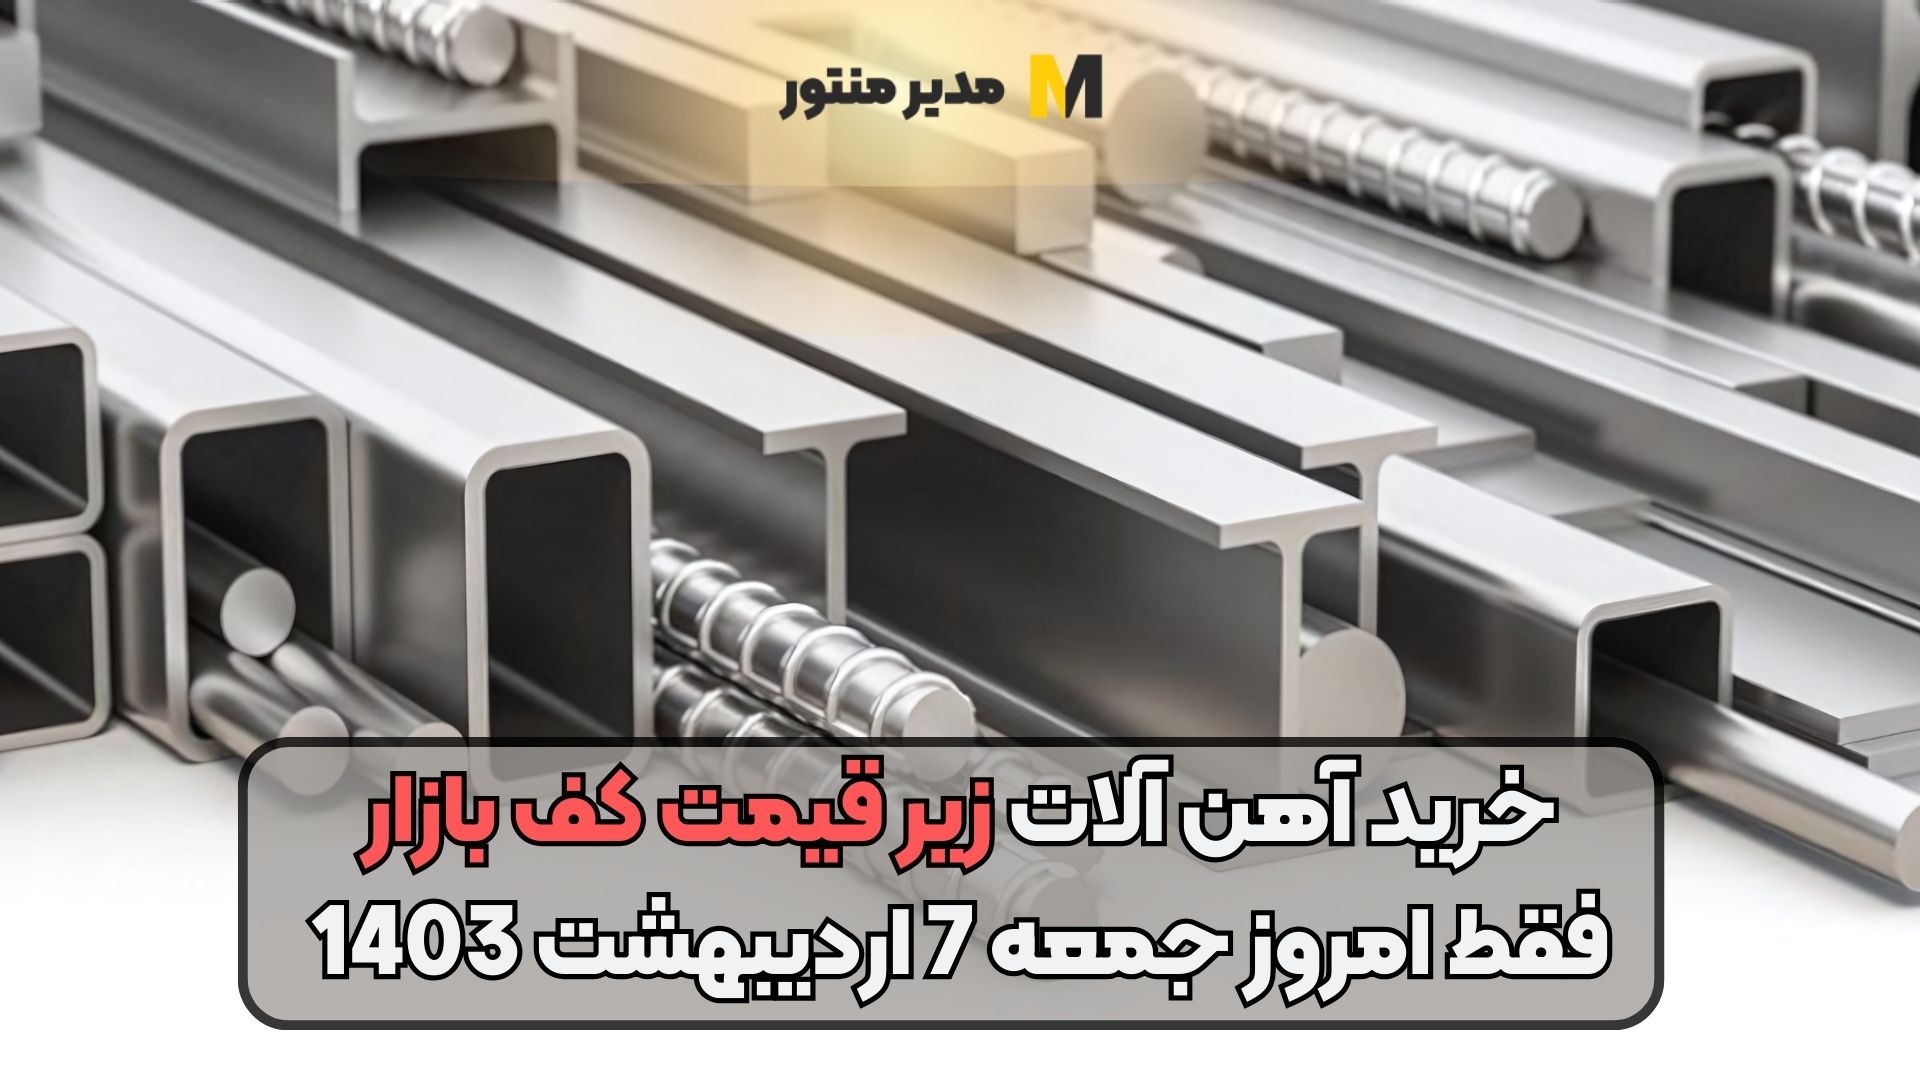 خرید آهن آلات زیر قیمت کف بازار فقط امروز جمعه 7 اردیبهشت 1403